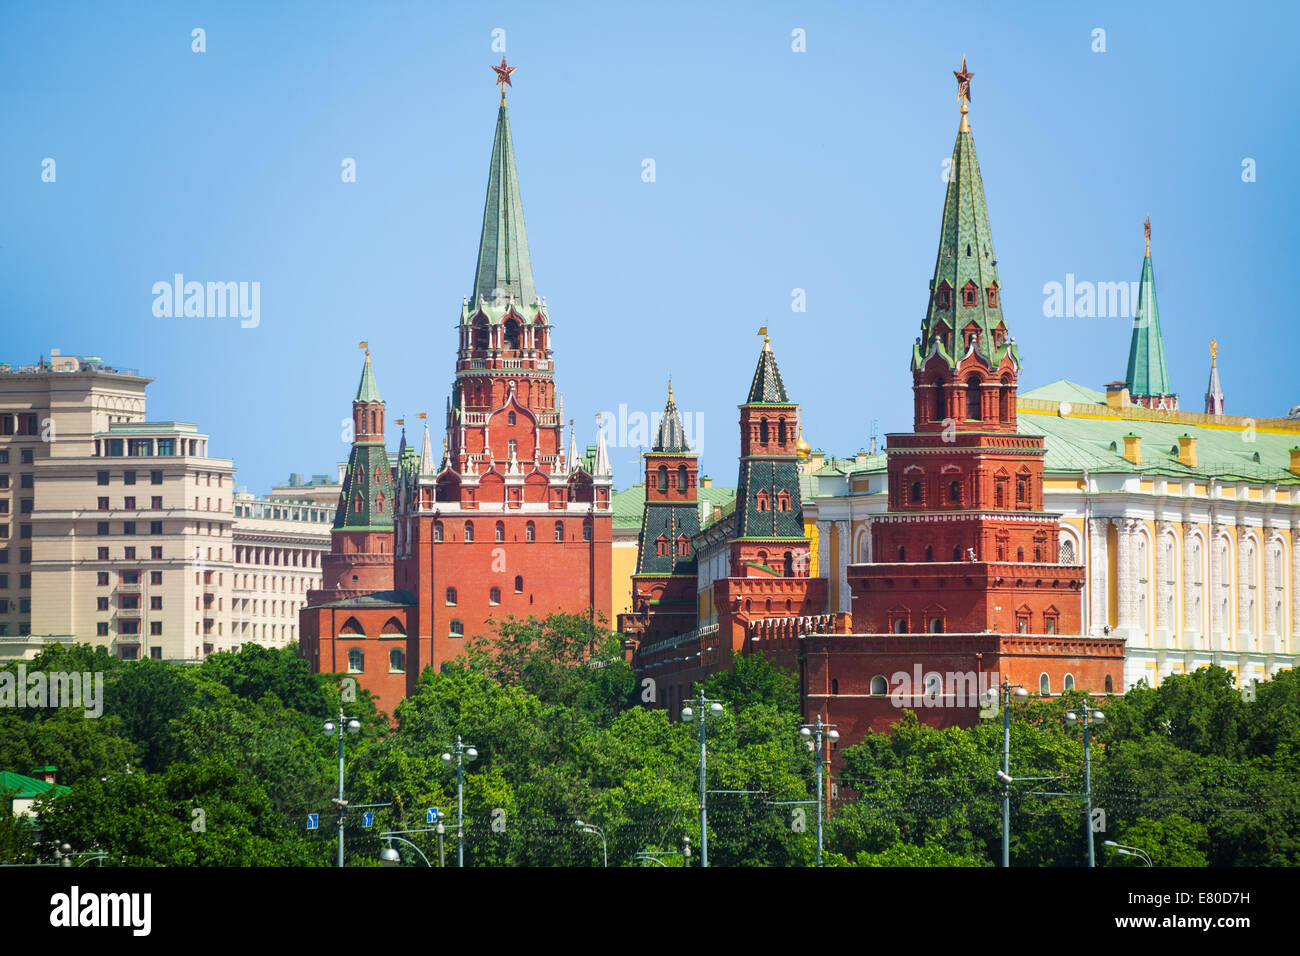 Vodovzvodnaya and Borovistakaya towers of Kremlin Stock Photo